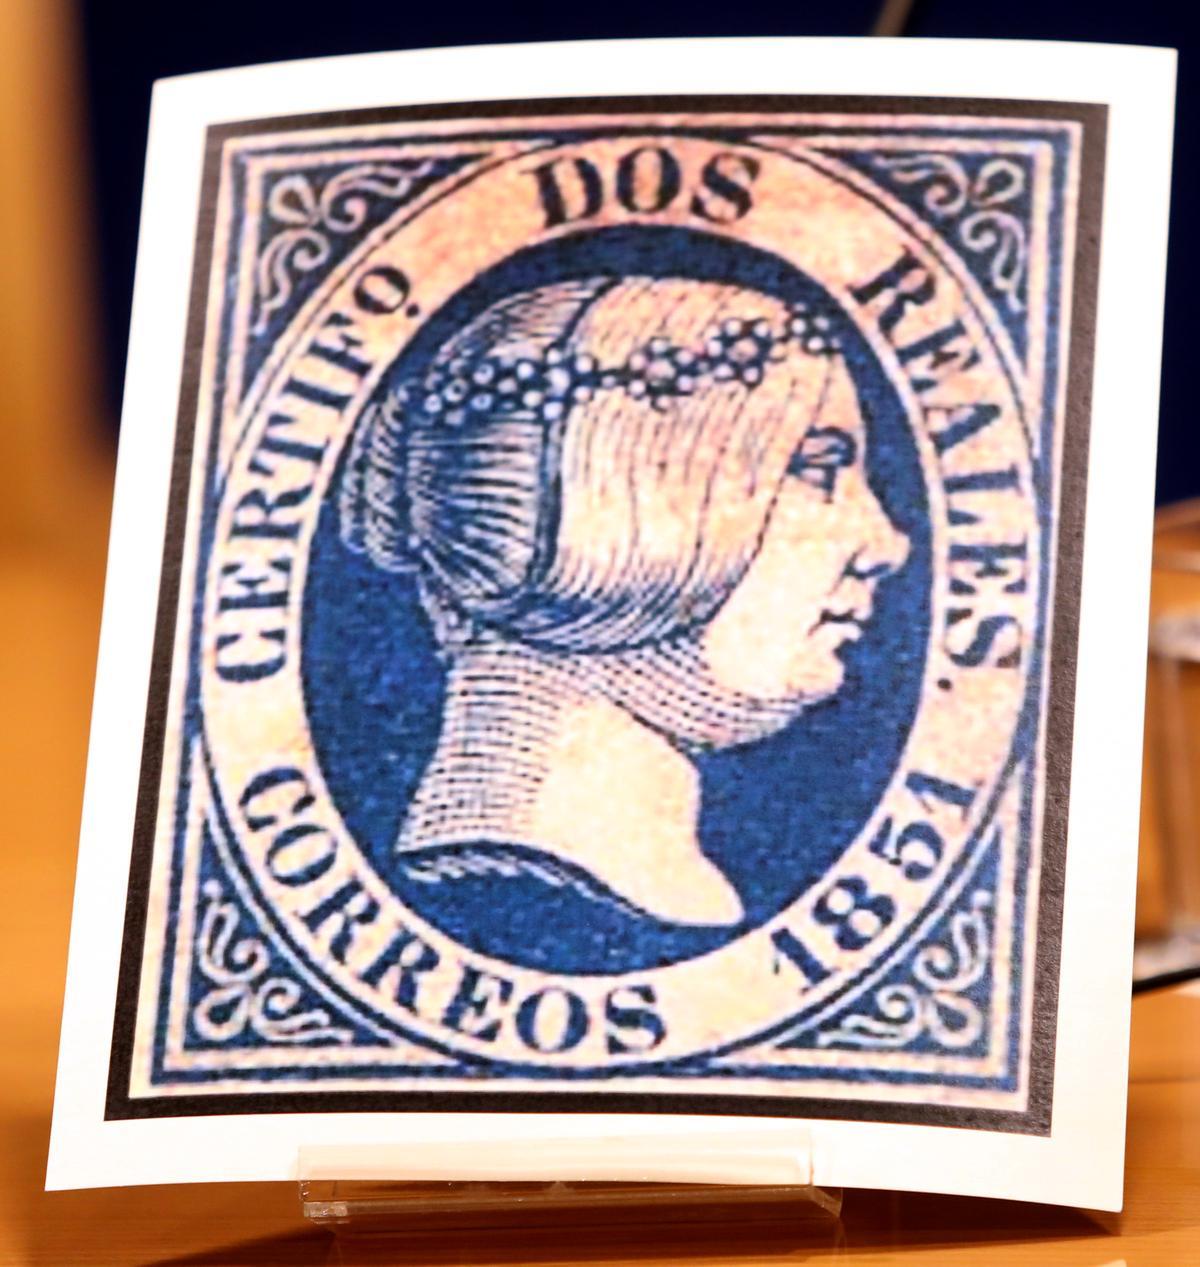 Una copia de uno de los sellos azules de dos reales.